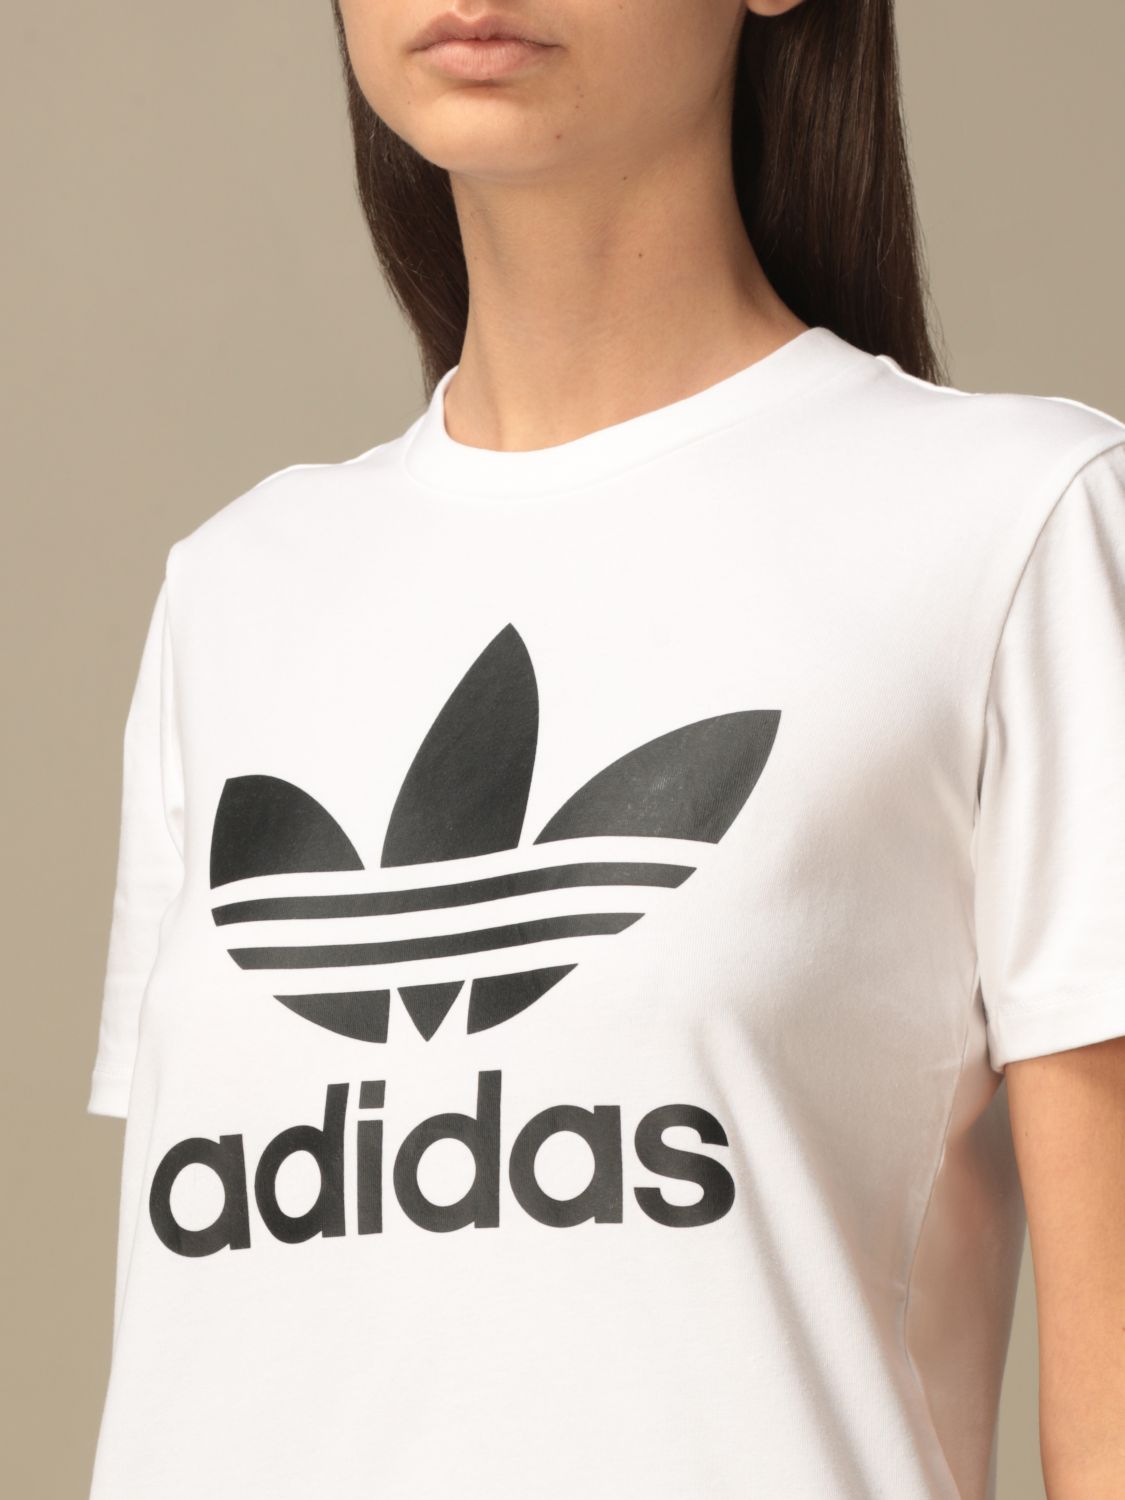 Distante lona Sospechar ADIDAS ORIGINALS: Camiseta para mujer, Blanco | Camiseta Adidas Originals  FM3306 en línea en GIGLIO.COM